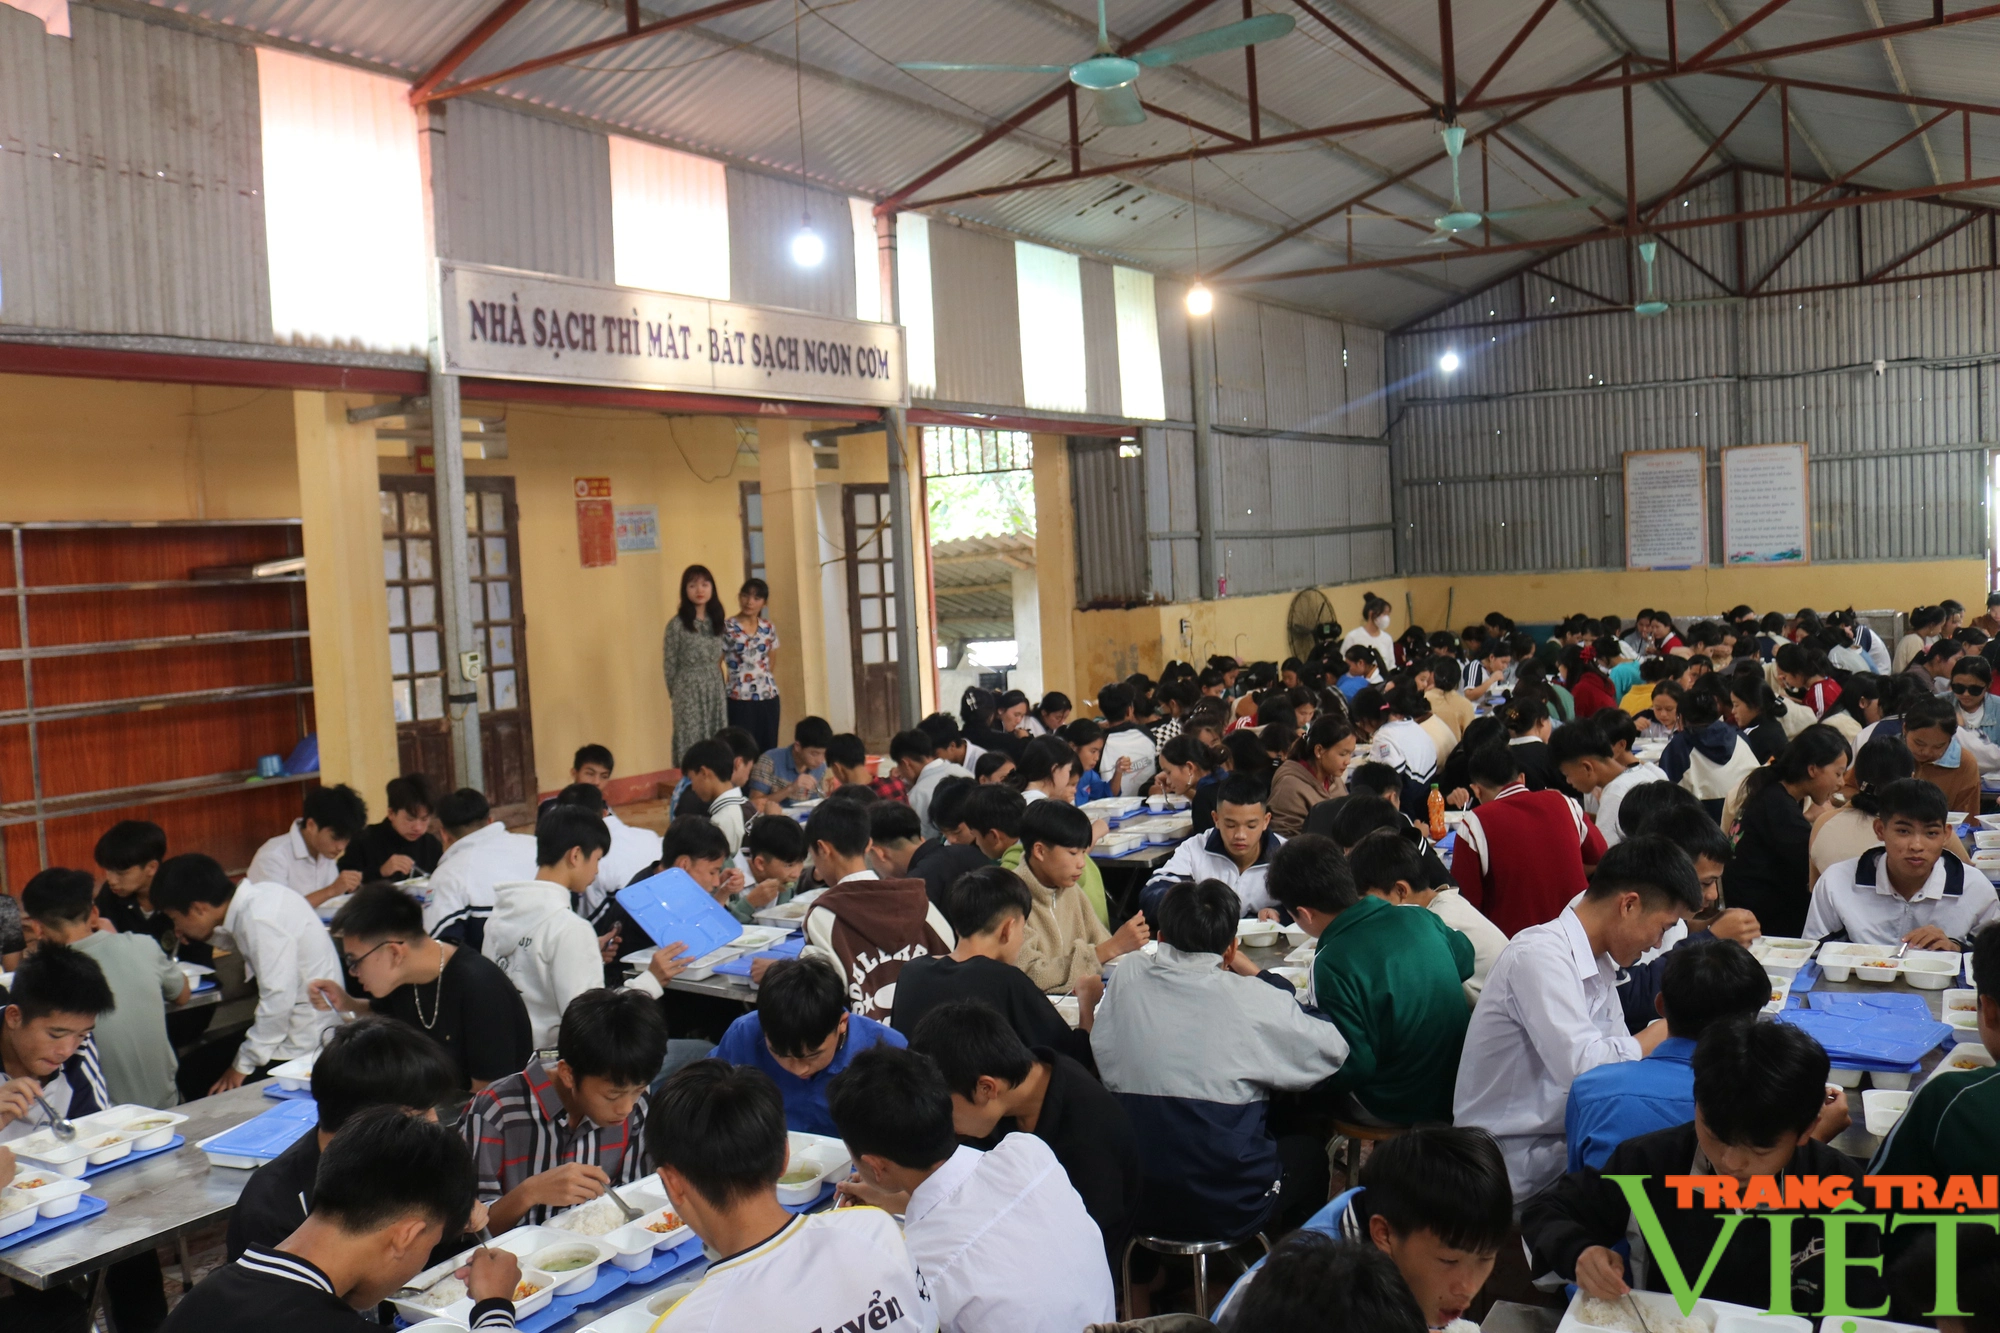 Quan tâm chăm lo học sinh bán trú ở vùng cao biên giới Lào Cai - Ảnh 2.